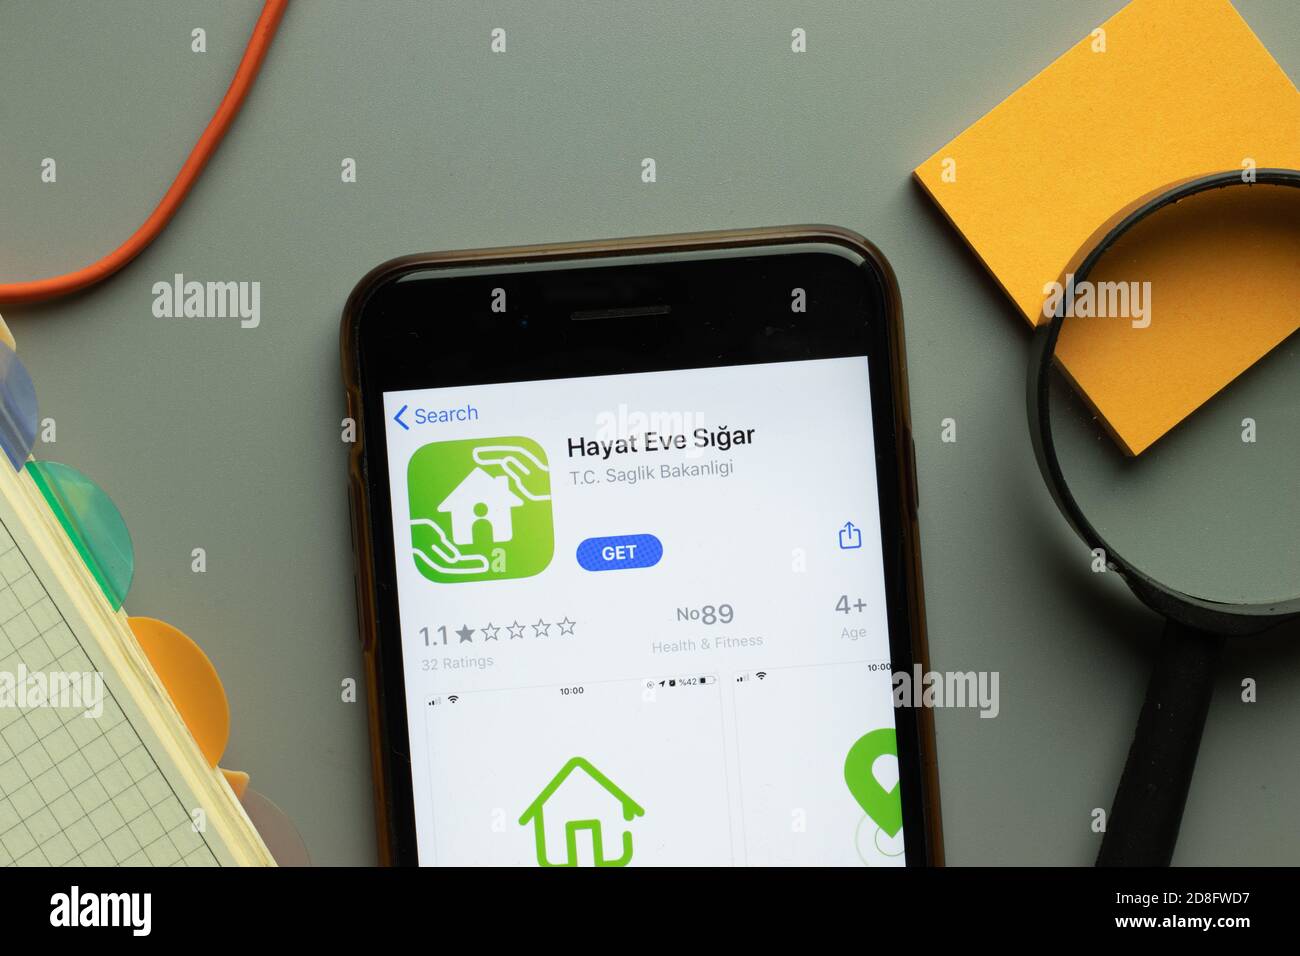 New York, USA - 26 ottobre 2020: Logo dell'app mobile Hayat Eve Sigar sullo schermo del telefono, editoriale illustrativo Foto Stock